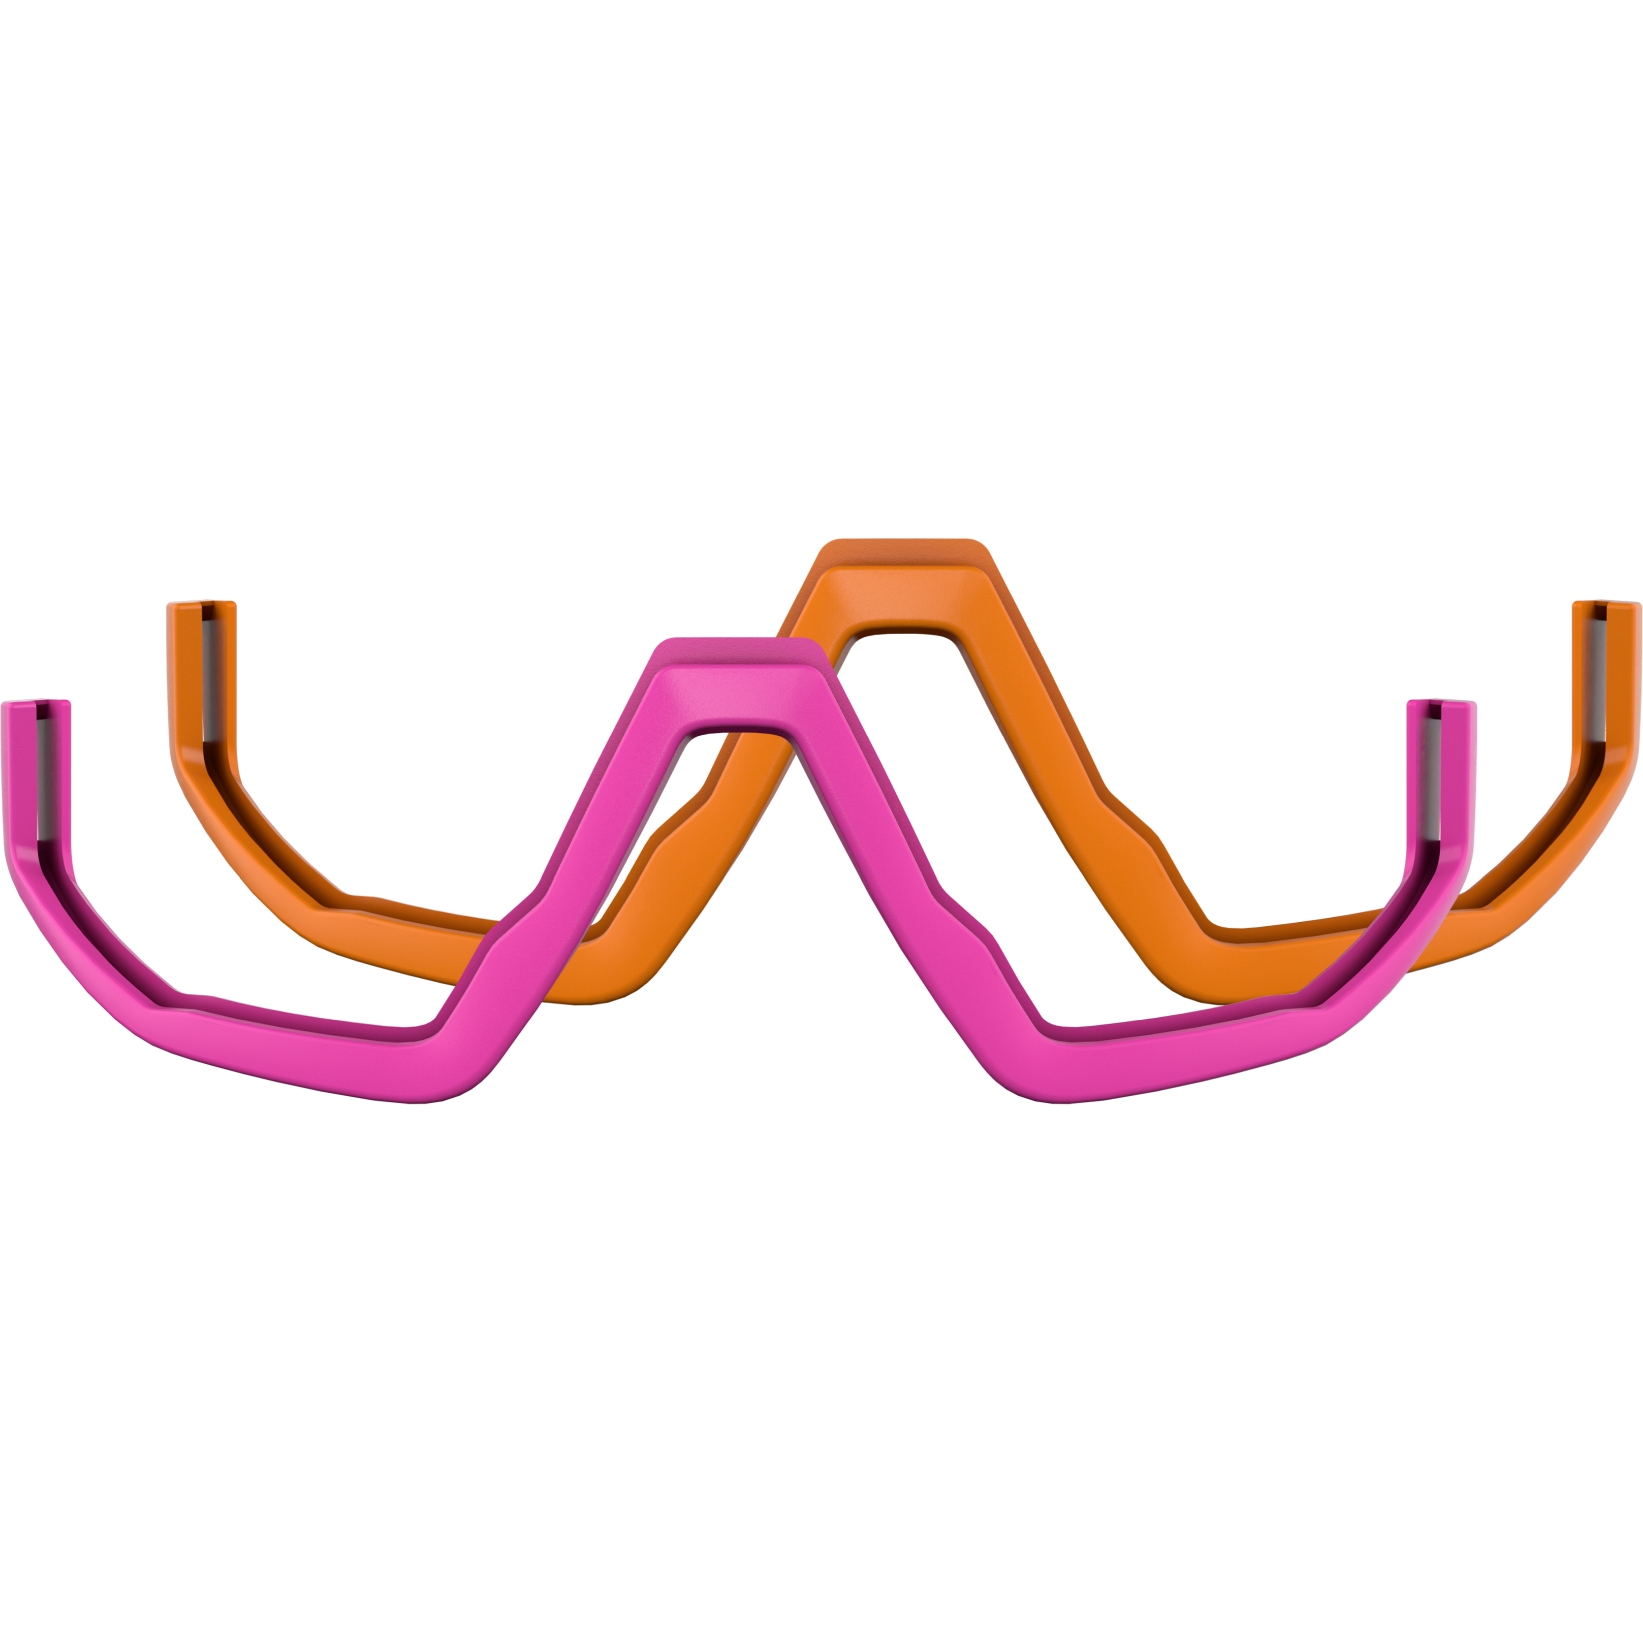 Produktbild von Bliz Fusion Jawbones Package - Neon Pink + Orange